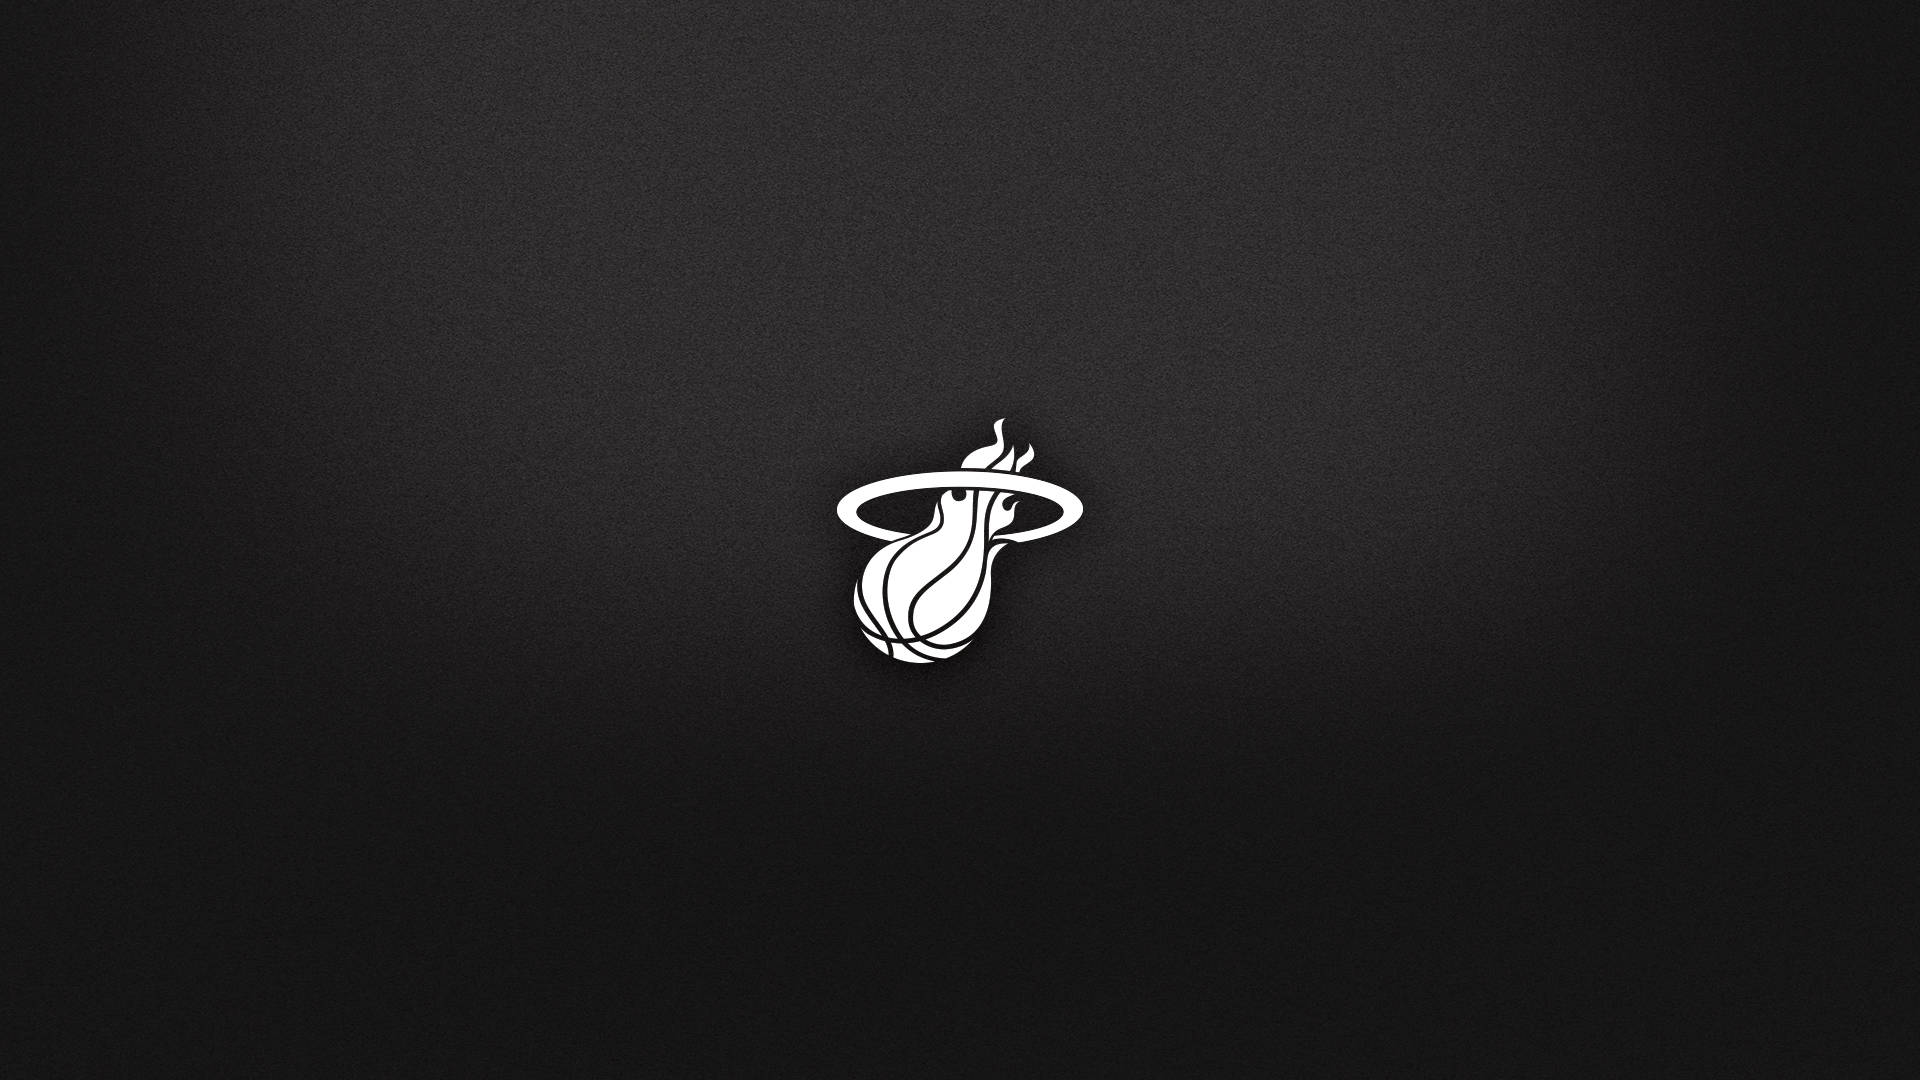 Minimalist Miami Heat Logo Wallpaper